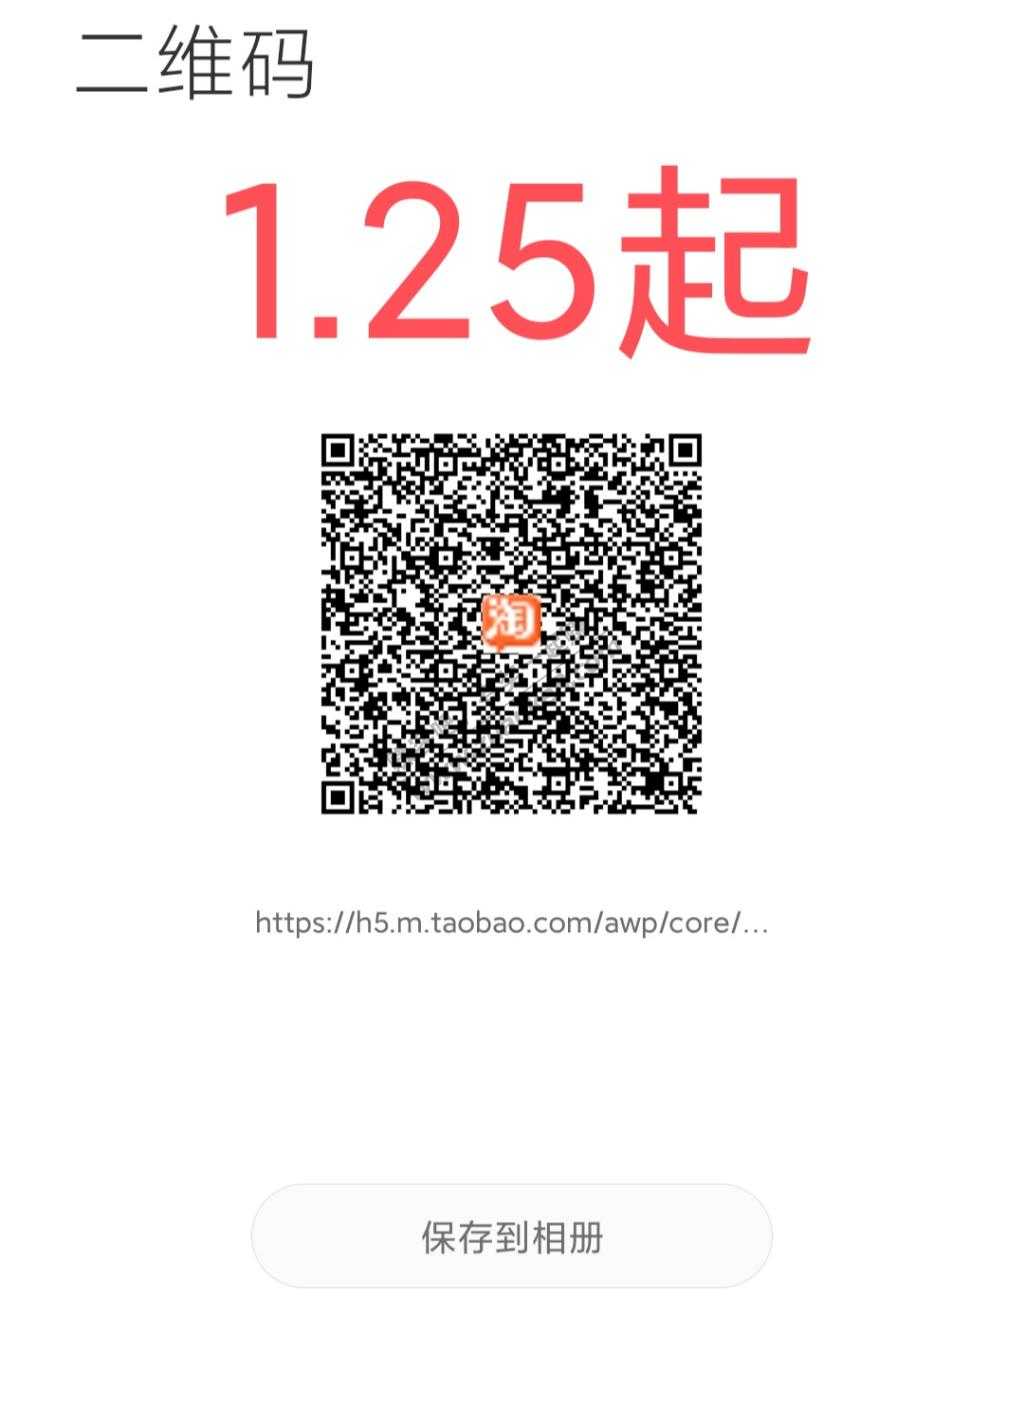 更新-签到红包q币入口-惠小助(52huixz.com)